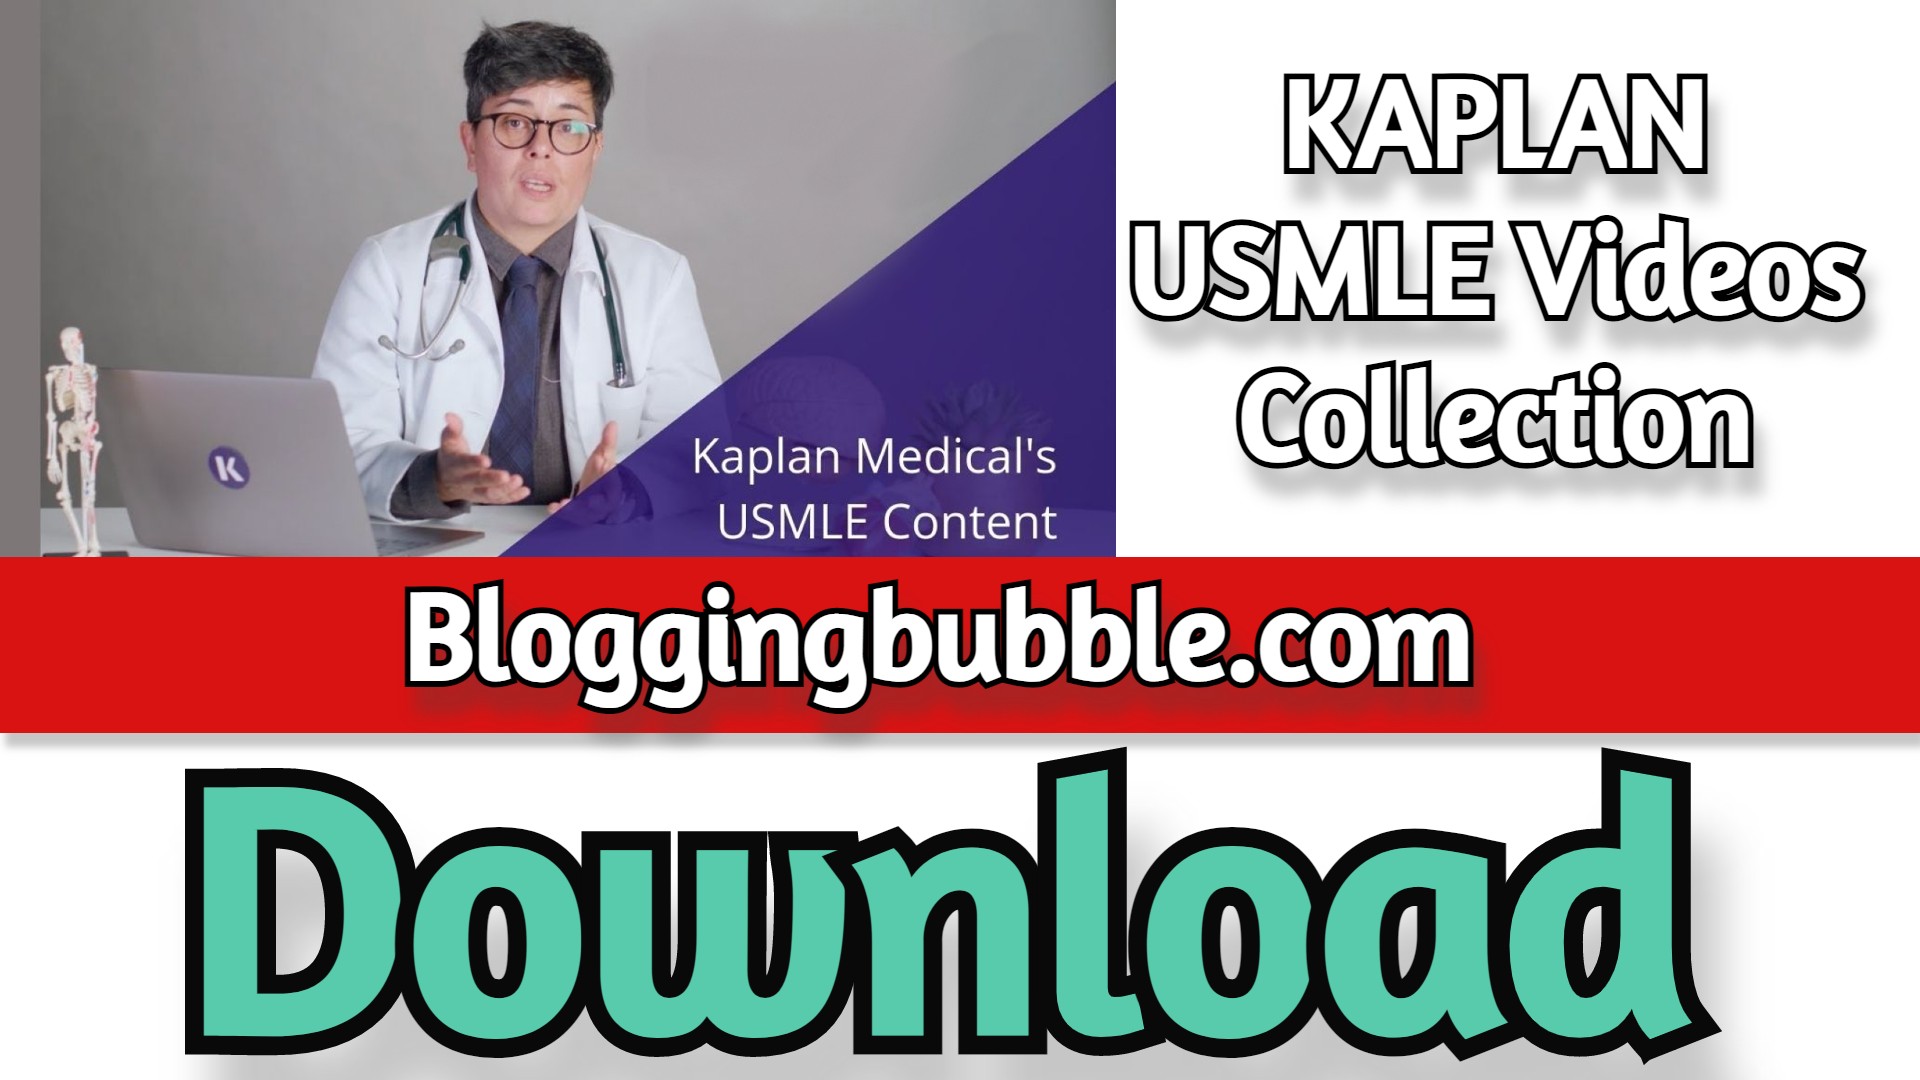 KAPLAN USMLE Videos Collection 2022 Free Download